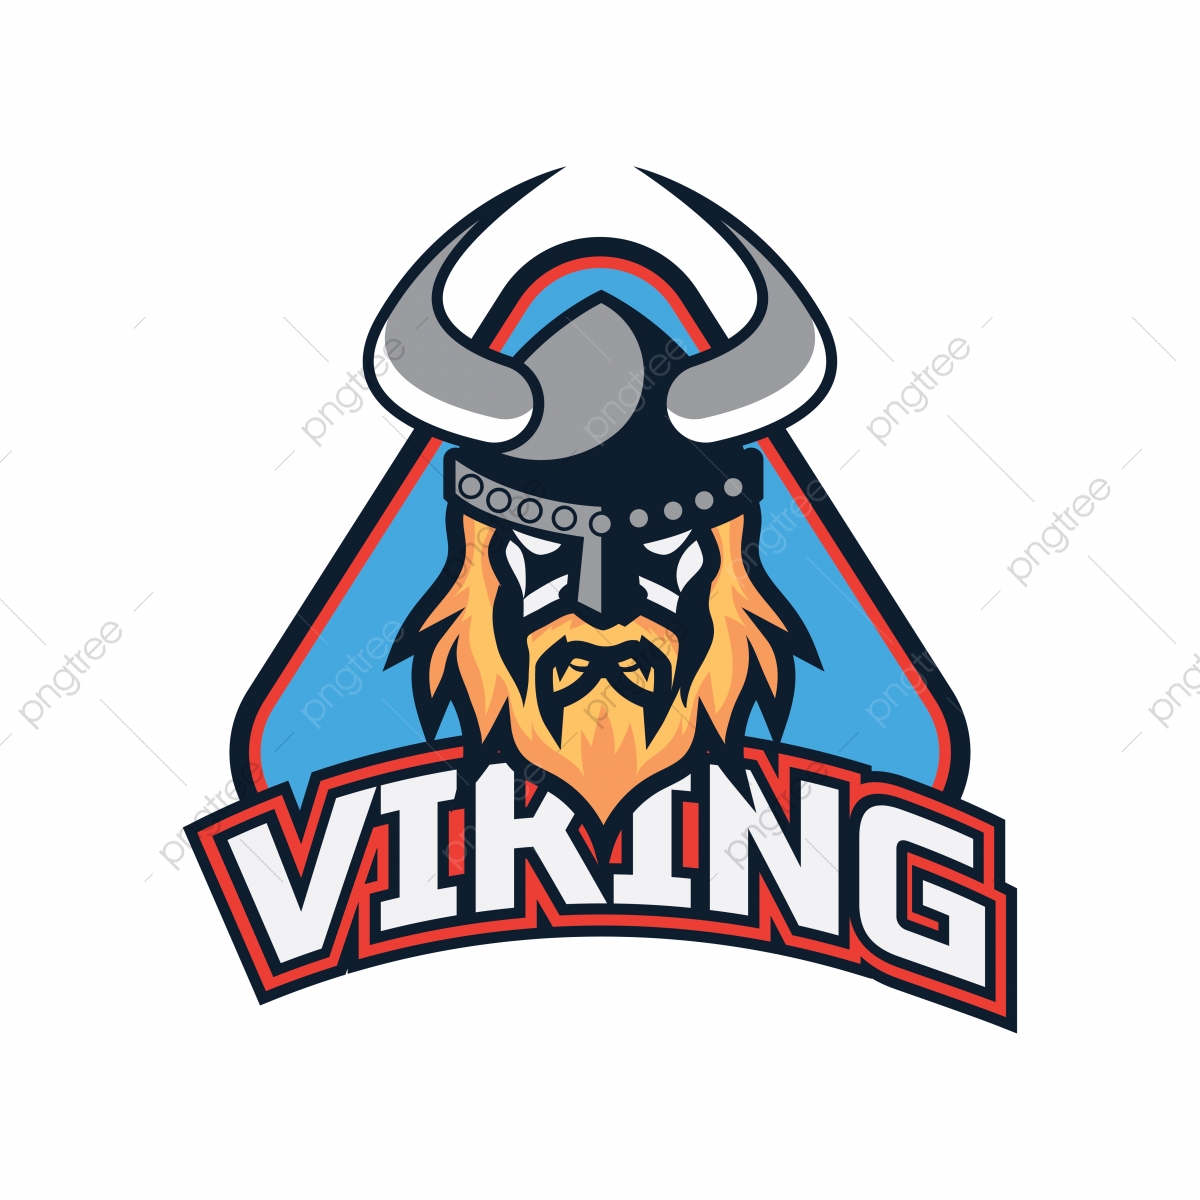 Vikings Logo Vector at Vectorified.com | Collection of Vikings Logo